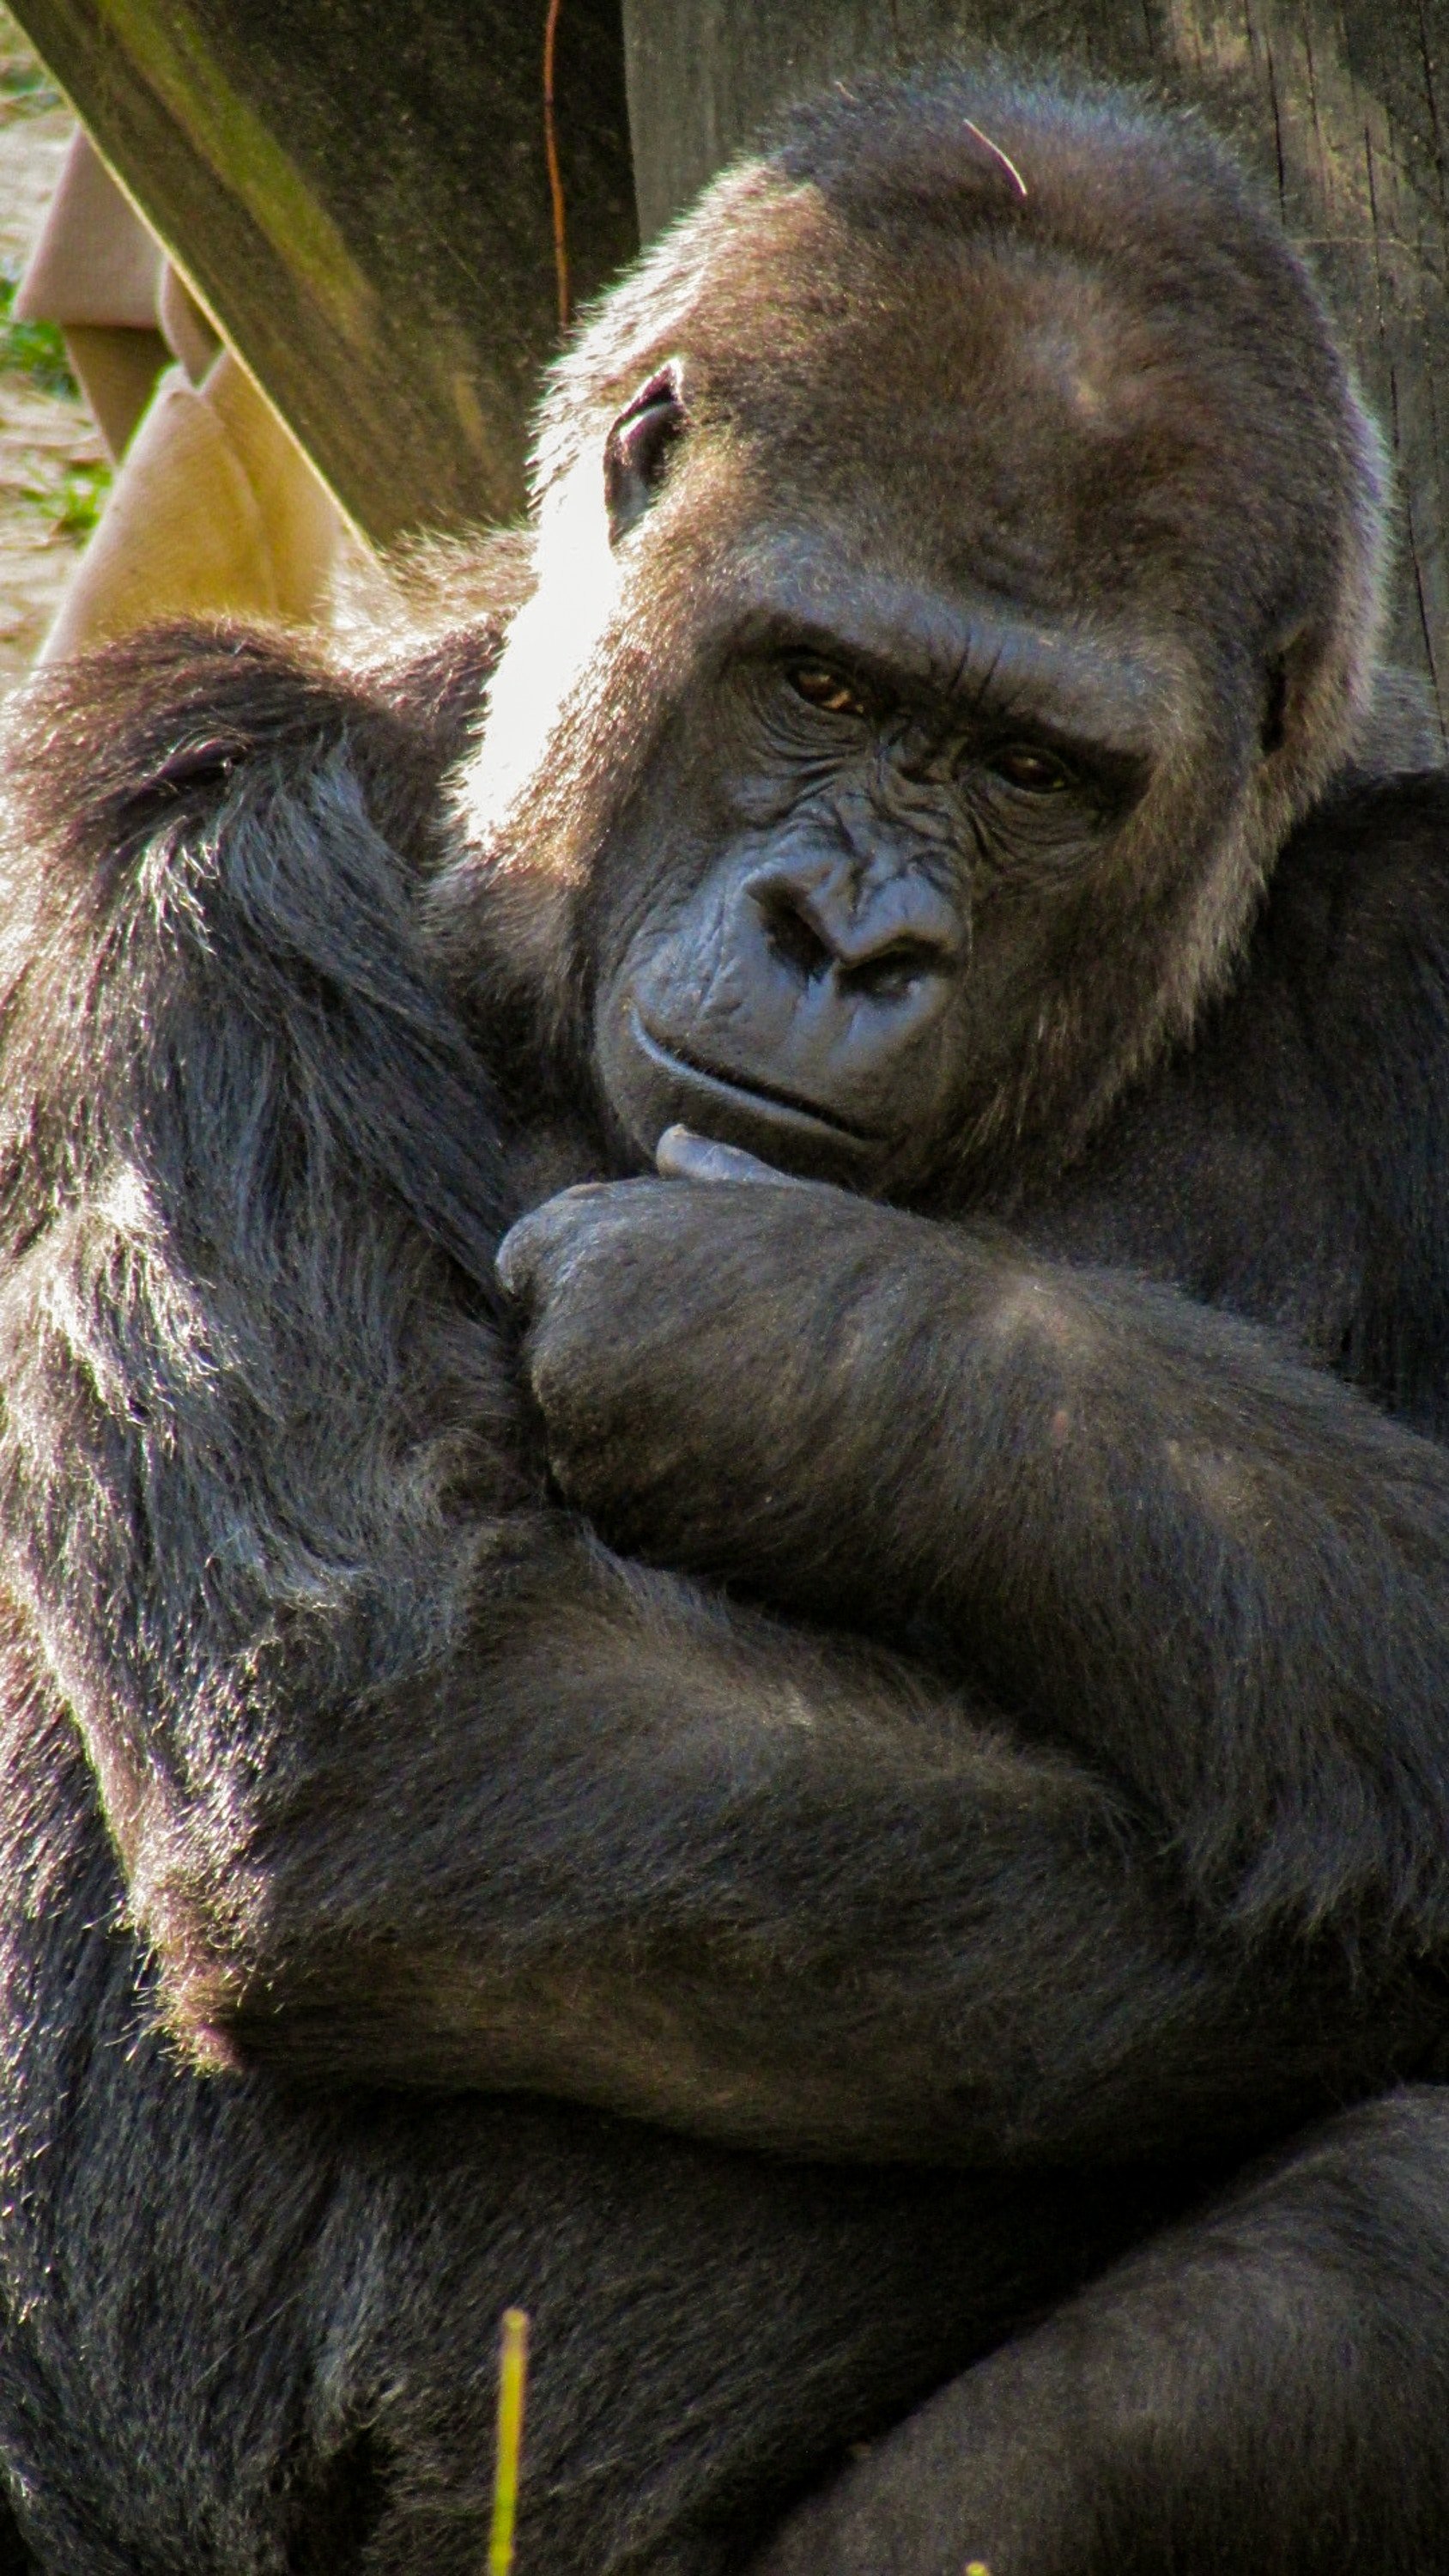 joshua j cotten 1141777 unsplash.jpg?resize=412,232 - Découvrez le selfie du garde forestier avec deux gorilles prenant la pose!